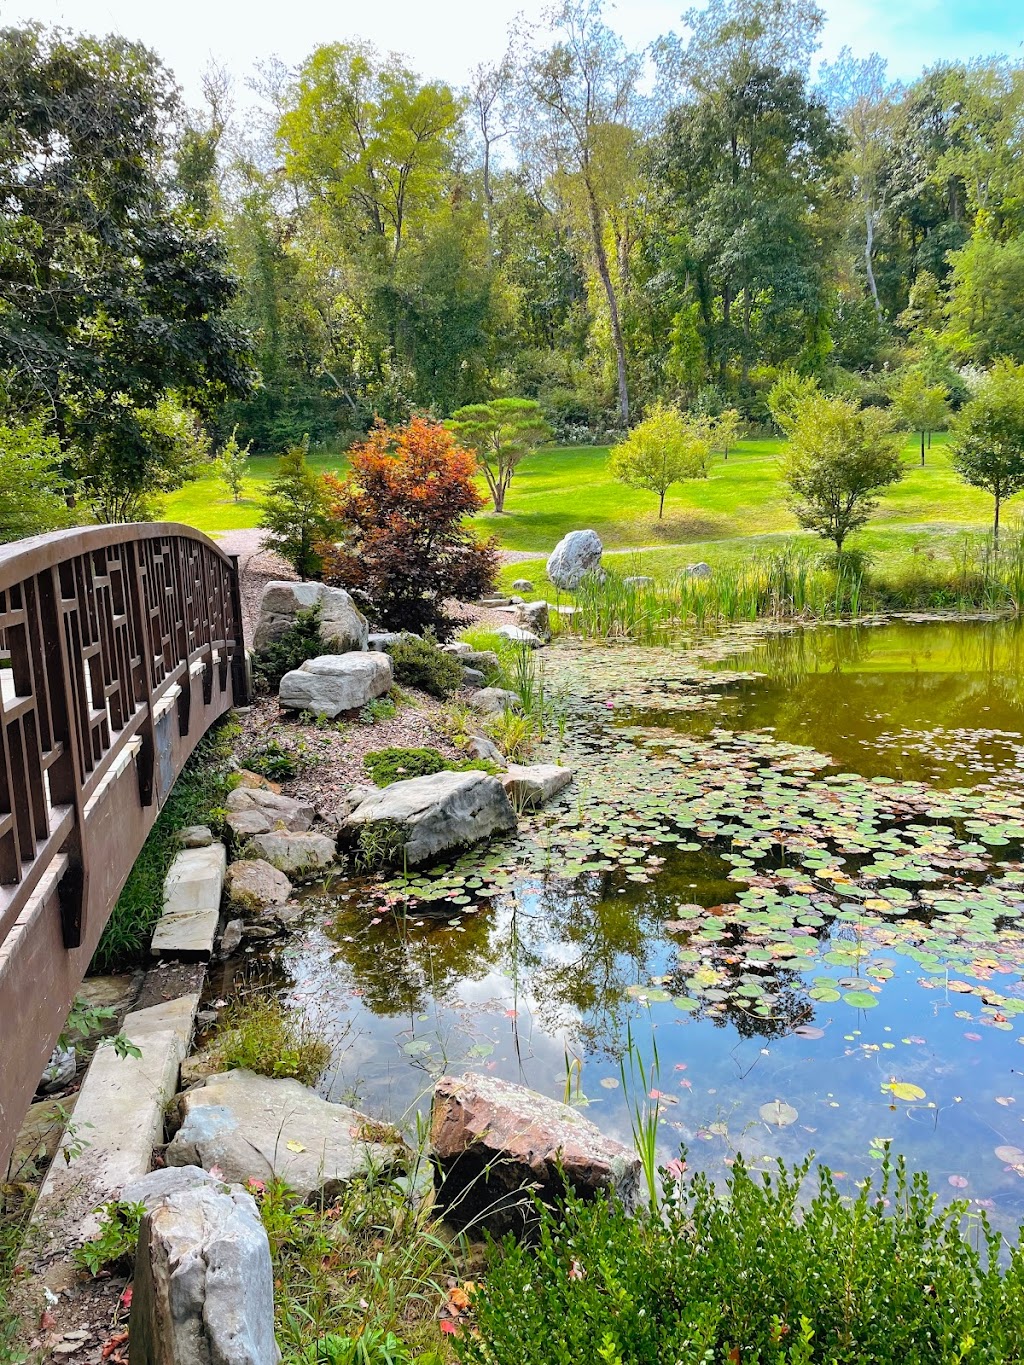 Pittsburgh Botanic Garden | 799 Pinkerton Run Rd, Pittsburgh, PA 15071, USA | Phone: (412) 444-4464